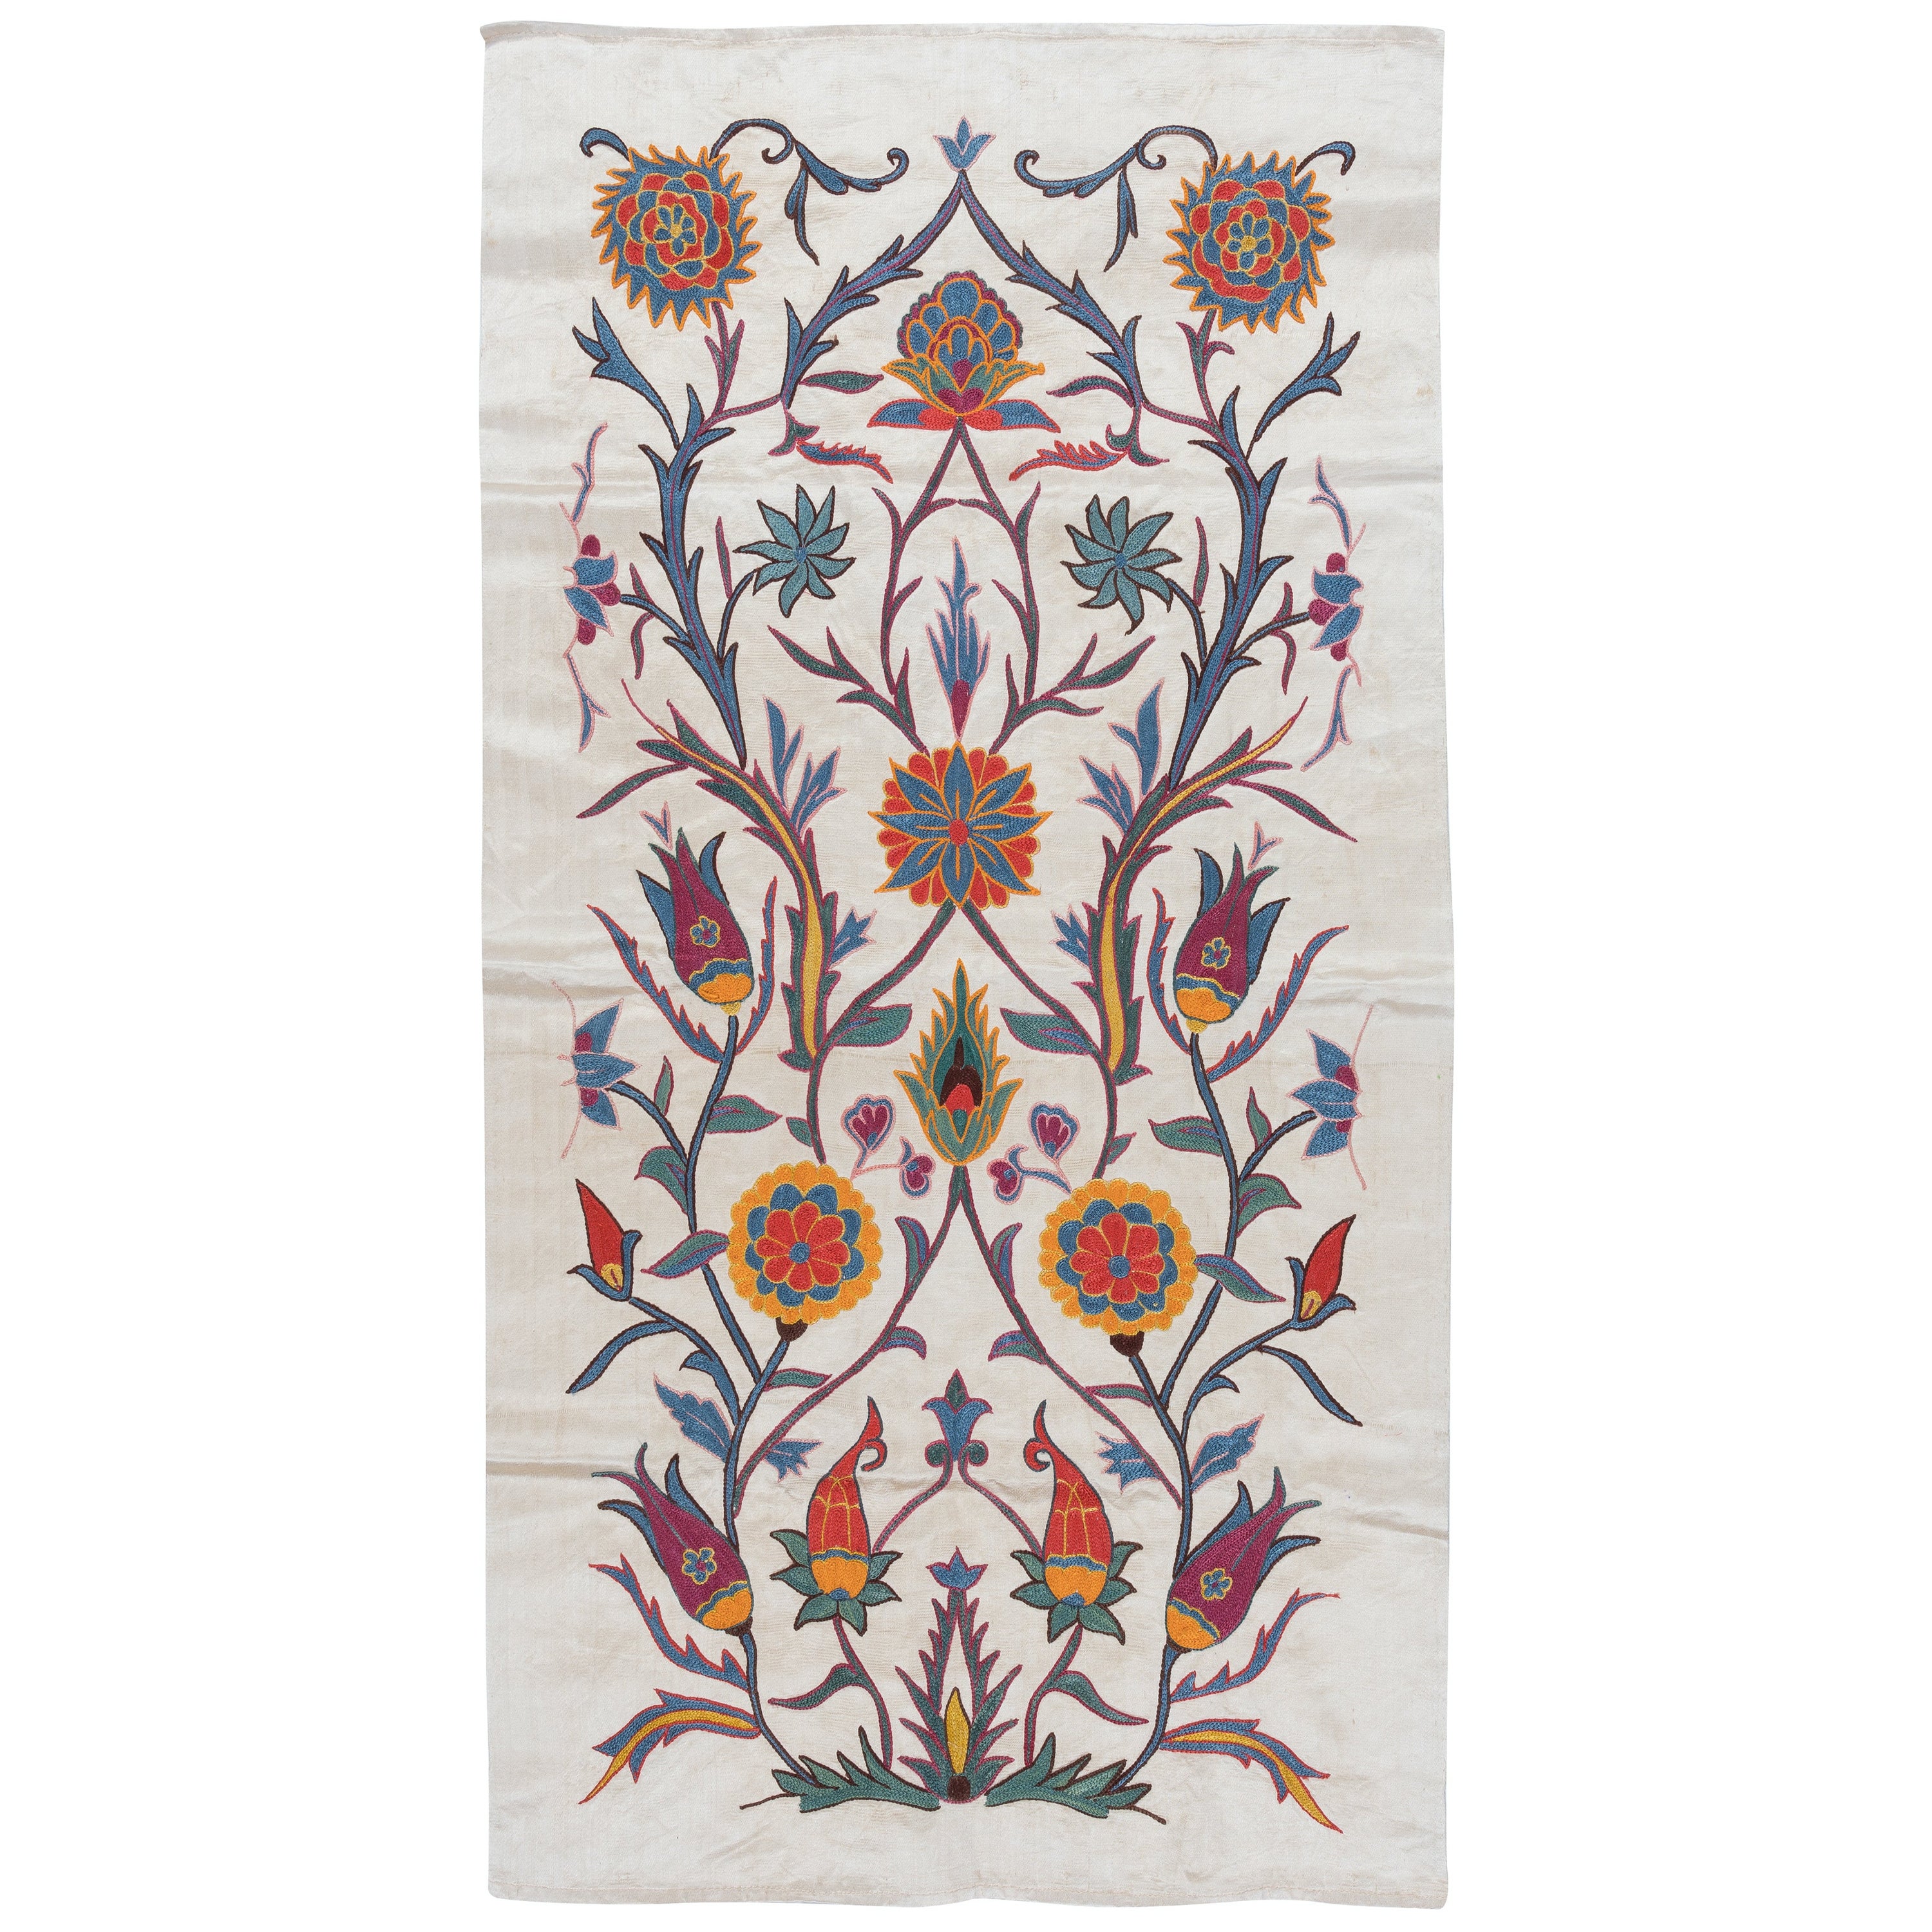 21 Zoll x41 Zoll 100% Seide Wandbehang mit Blumenmuster, bestickter usbanischer Wandteppich